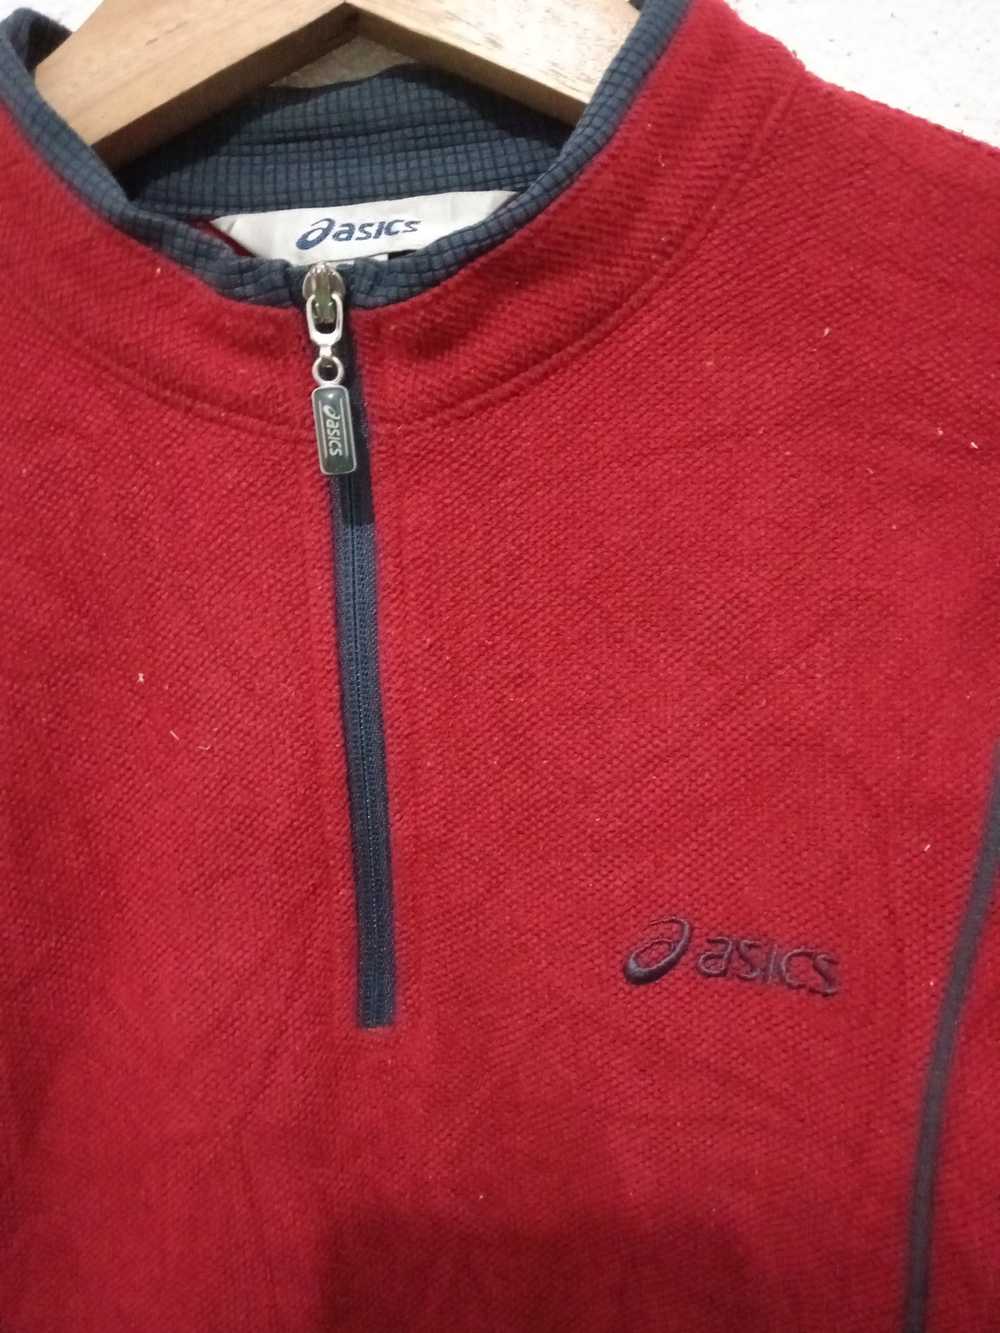 Asics × Japanese Brand Asics Sweatshirt - image 2